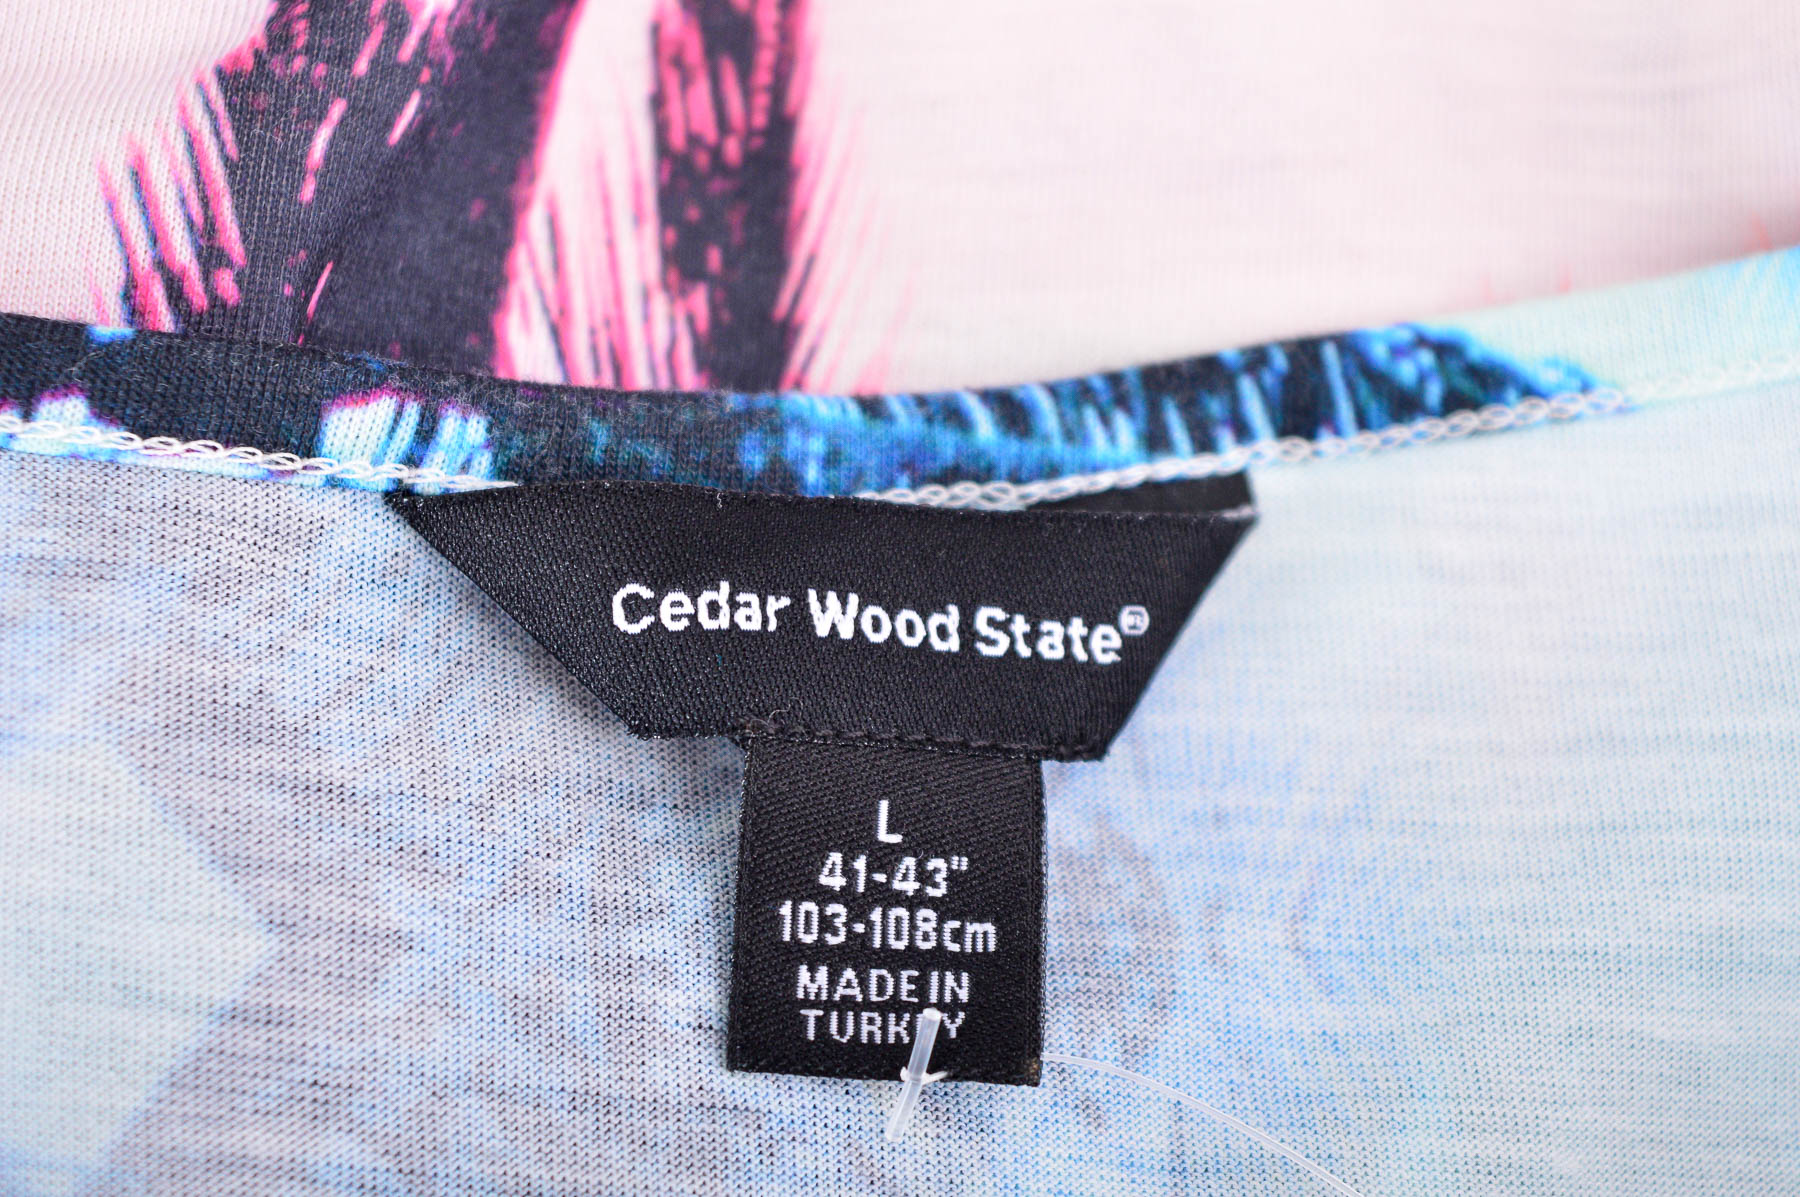 Ανδρικό φανελάκι - Cedar Wood State - 2